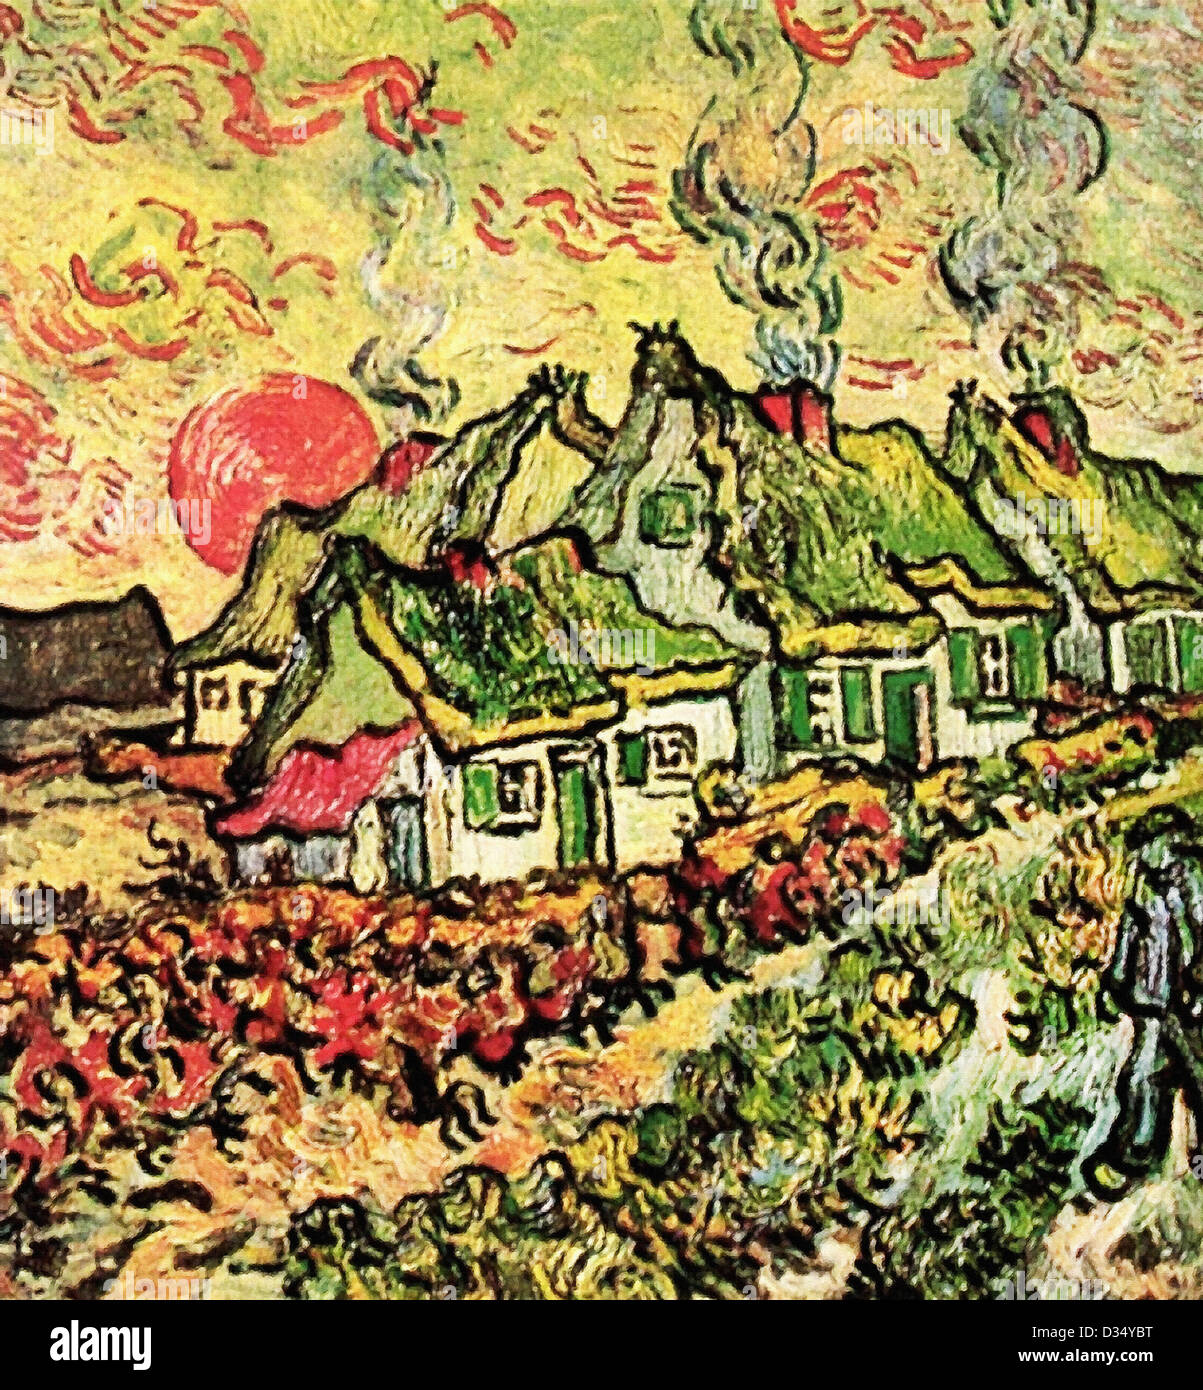 Vincent van Gogh, Cottages rappelant la Nord. 1890. Le postimpressionnisme. Huile sur toile. Création:Saint-Rémy-Blanzy France Banque D'Images